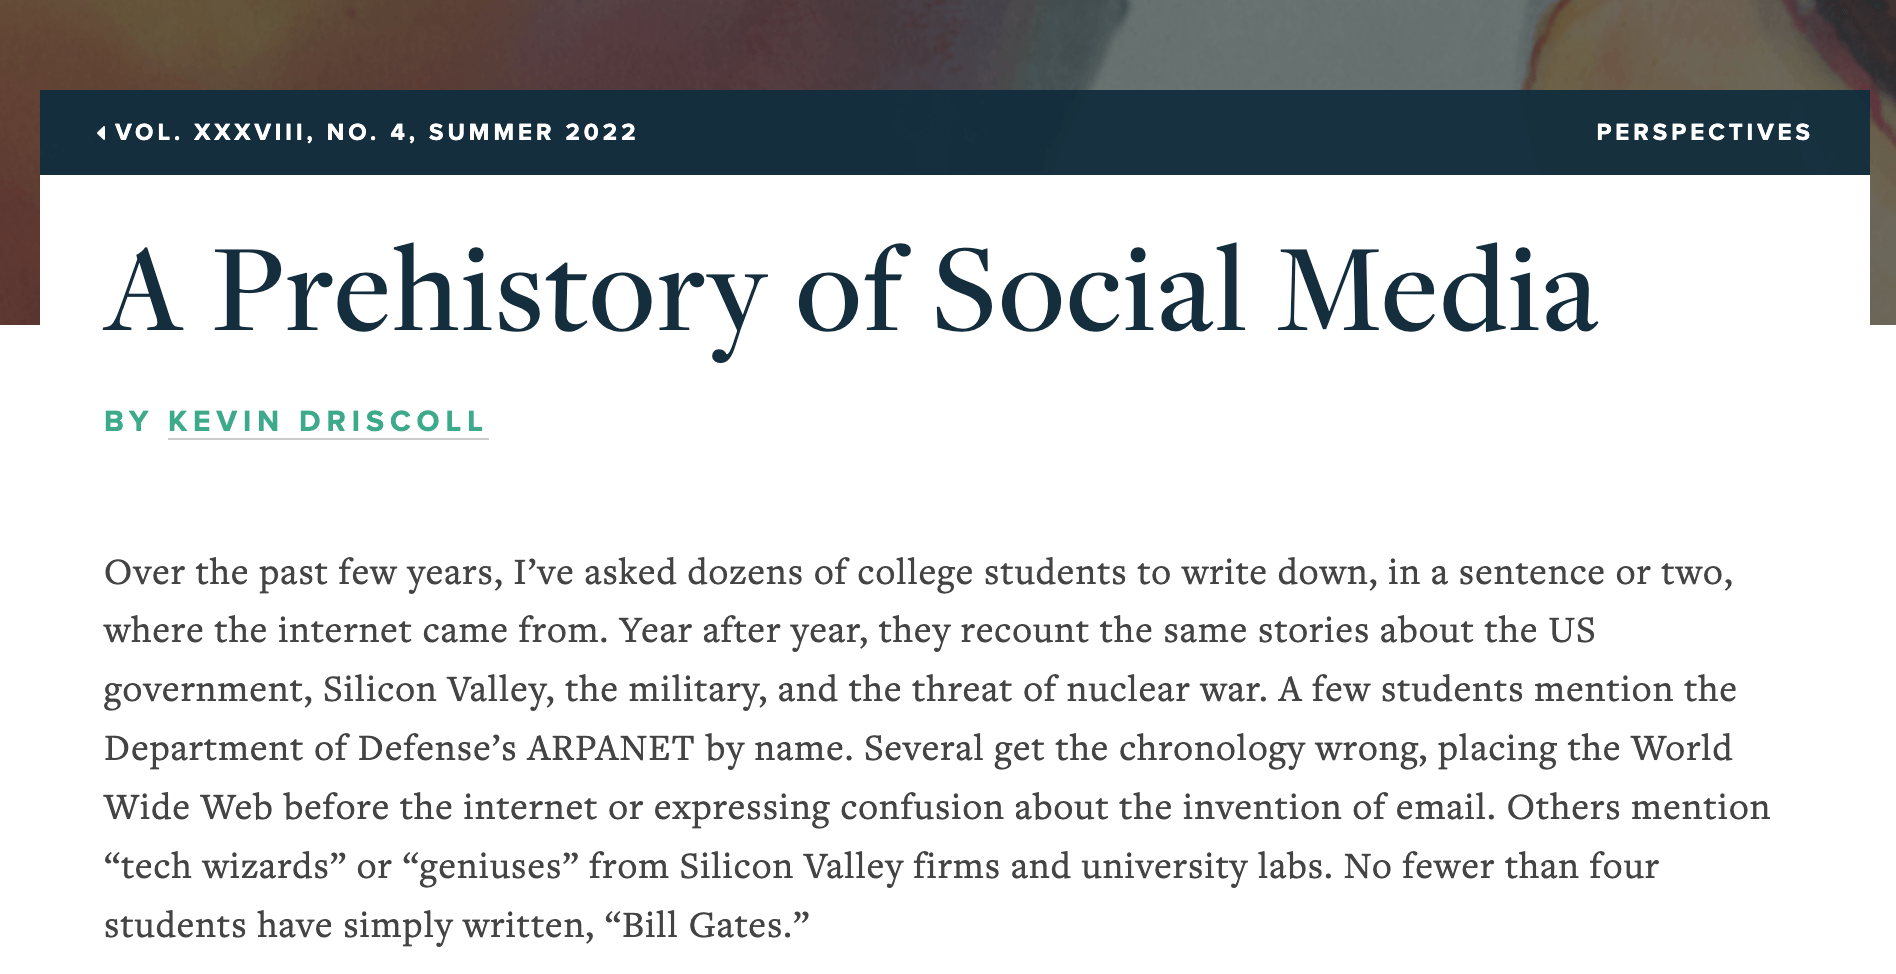 A Prehistory of Social Media